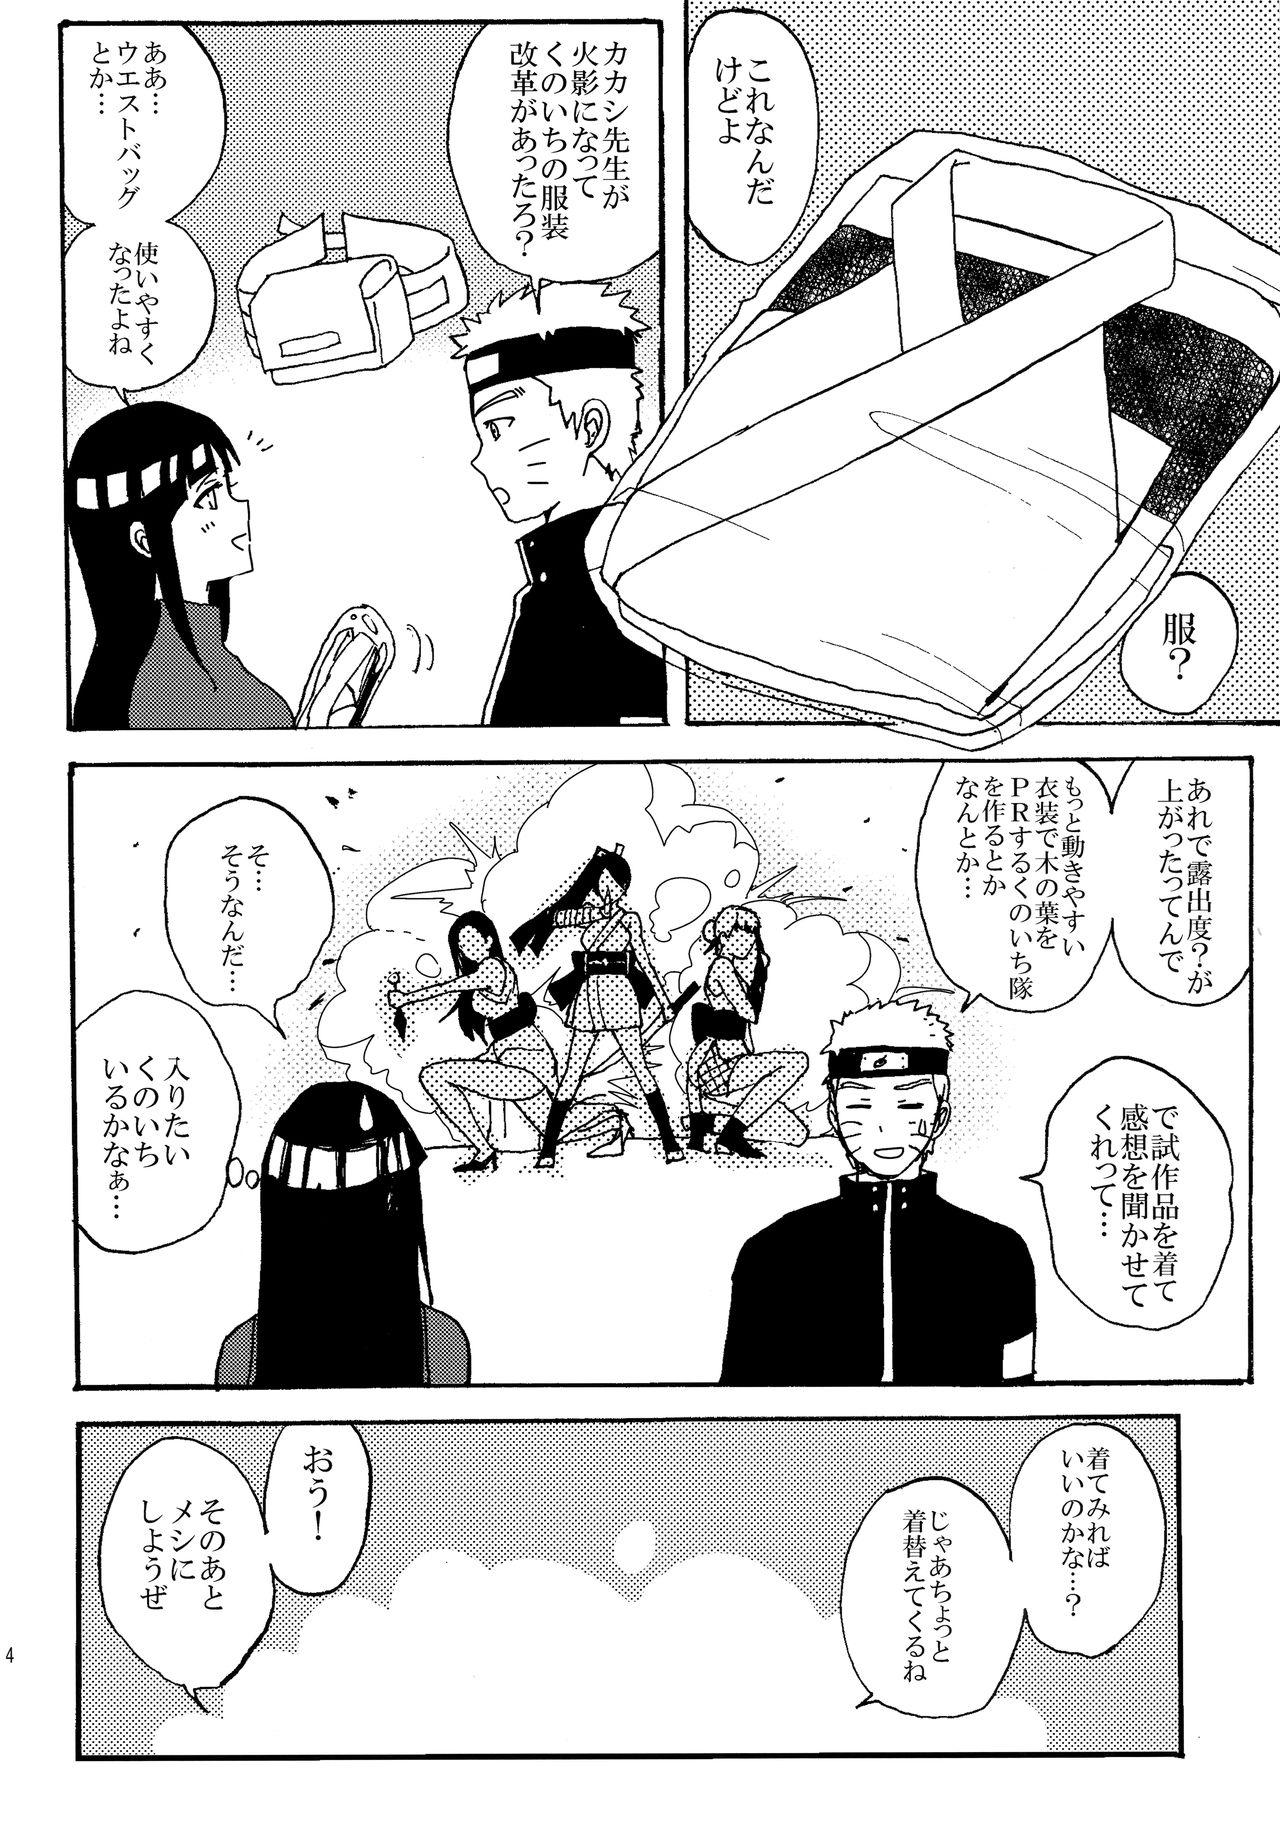 Dominatrix Shinkon Hinata no Kunoichi Cosplay datteba yo! - Naruto Harcore - Page 3